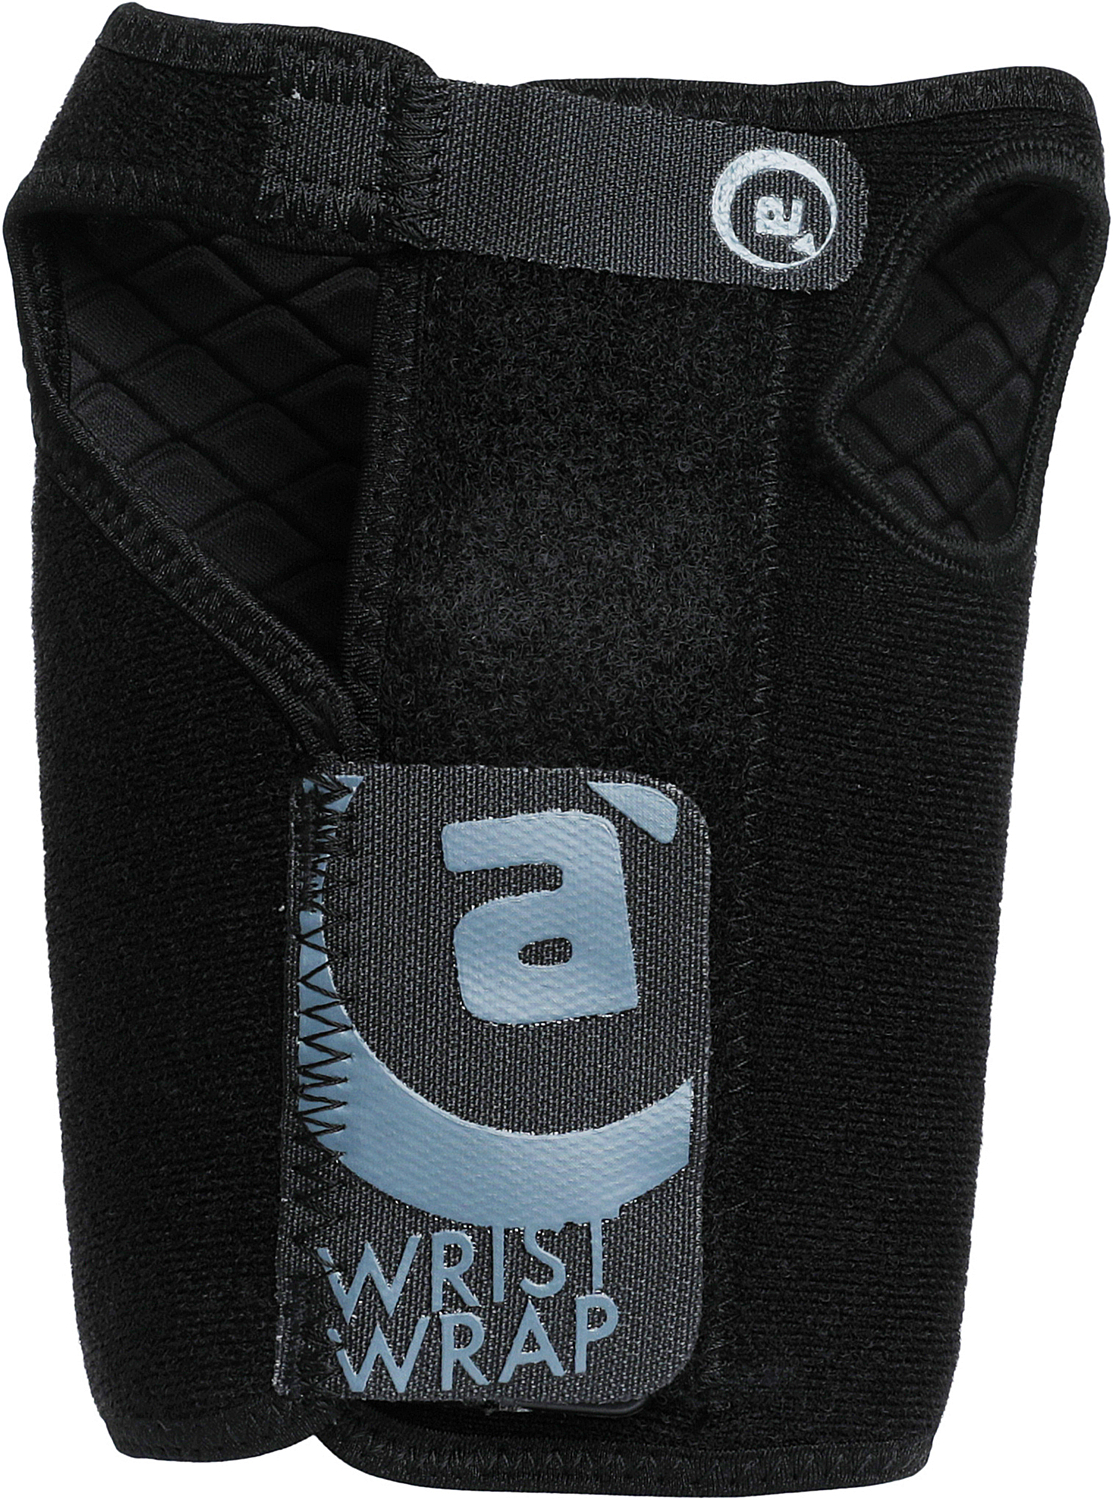 Защита запястья Amplifi Wrist Wrap Black